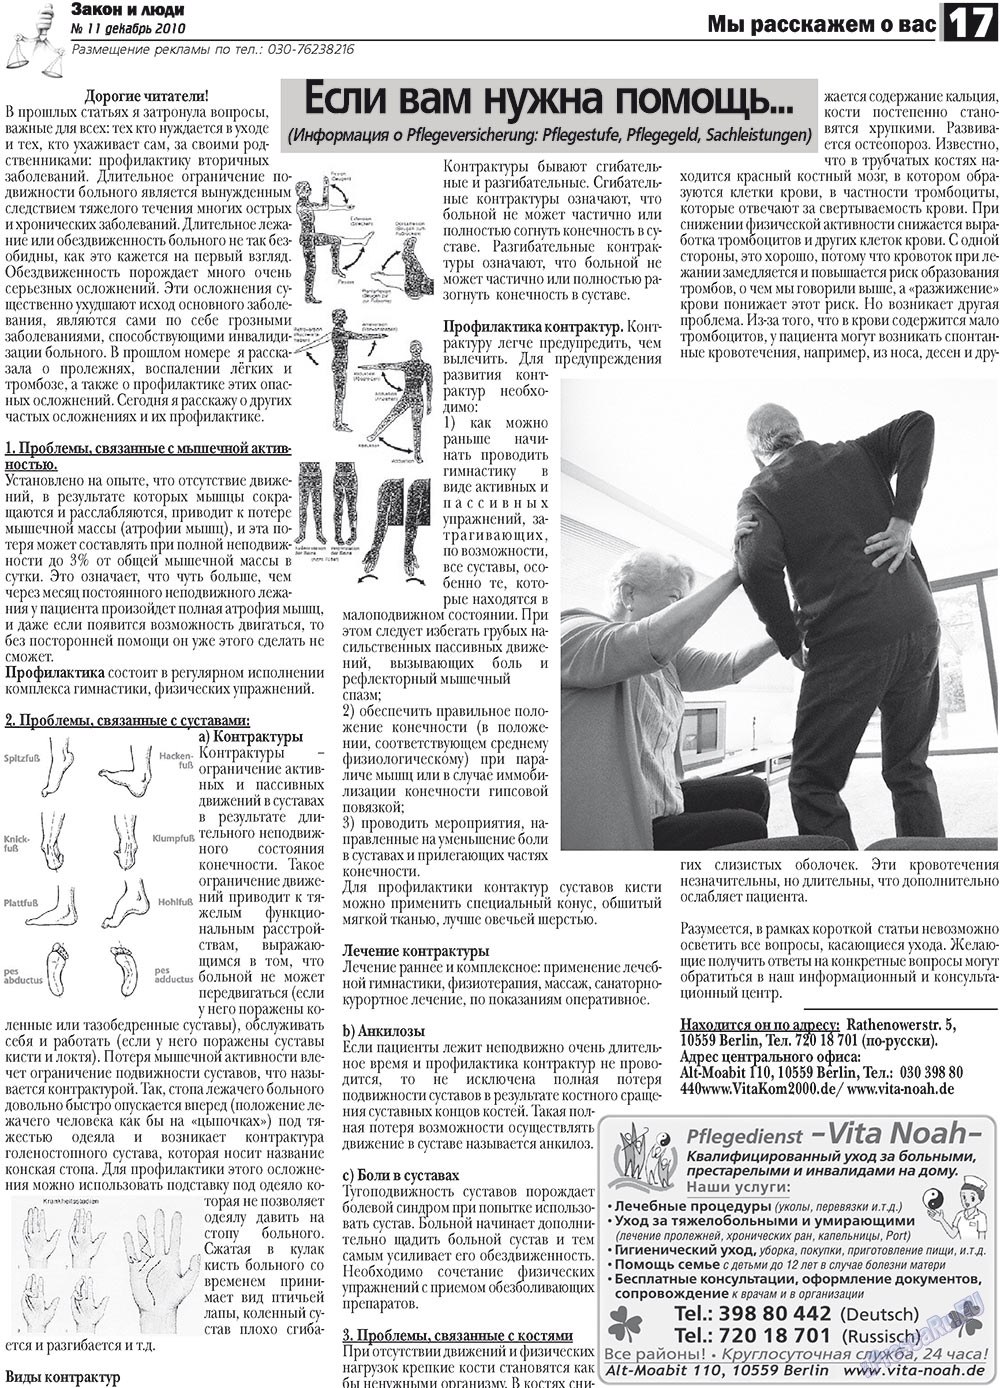 Закон и люди, газета. 2010 №11 стр.17